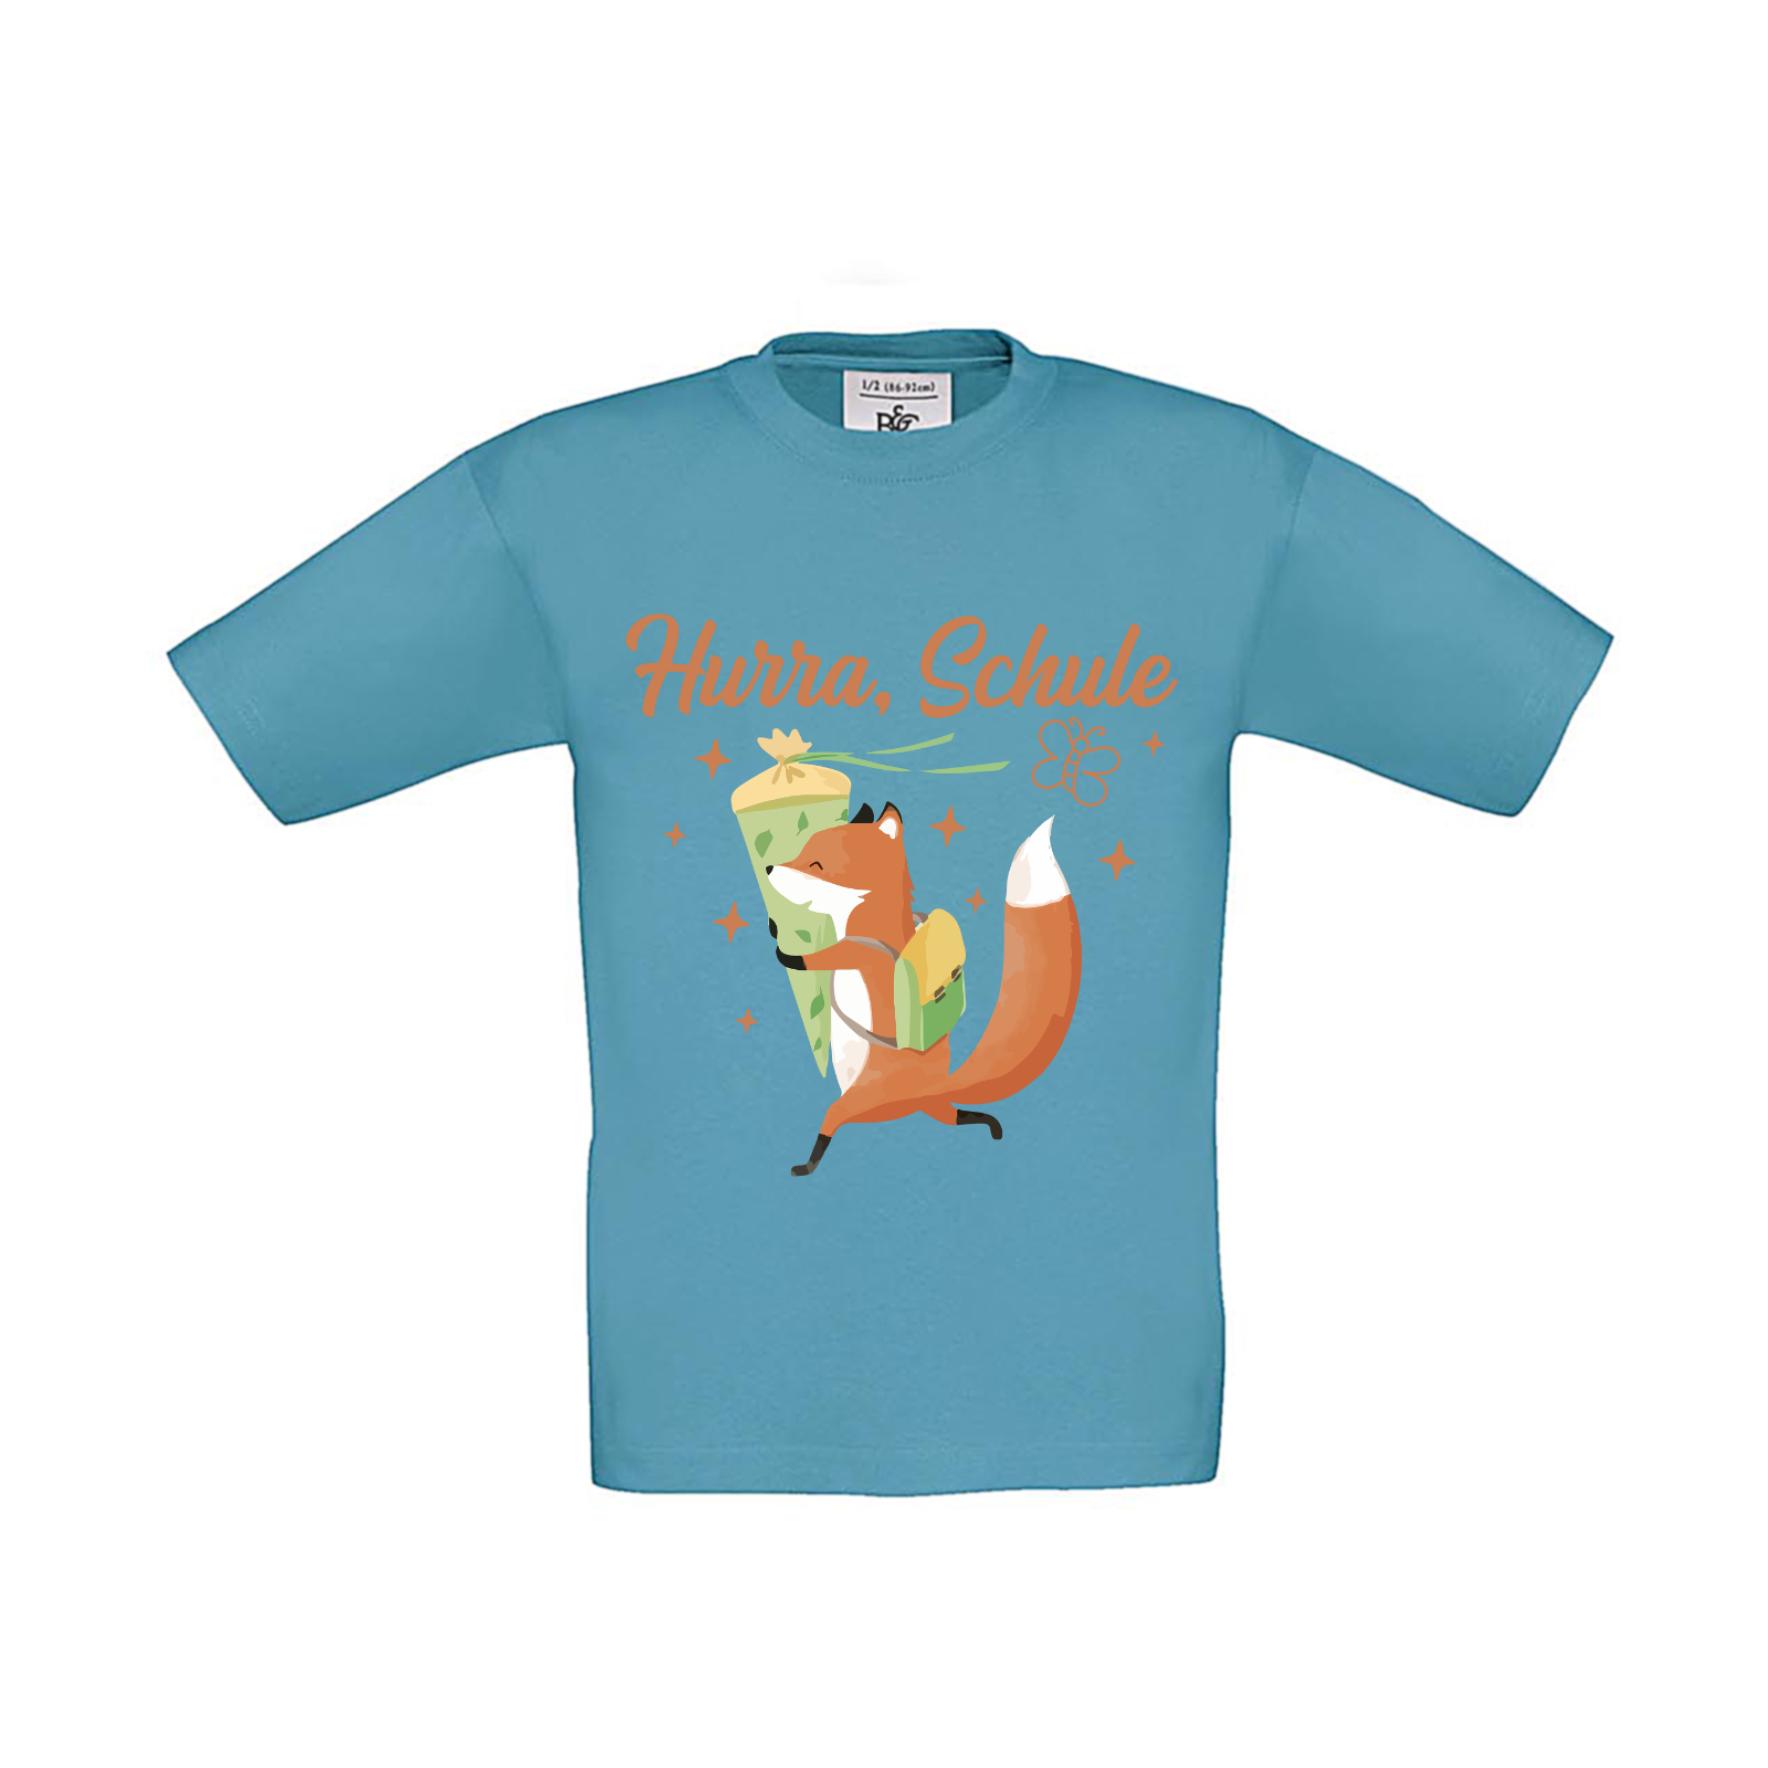 T-Shirt Kinder Schule - Einschulung Hurra Schule Fuchs